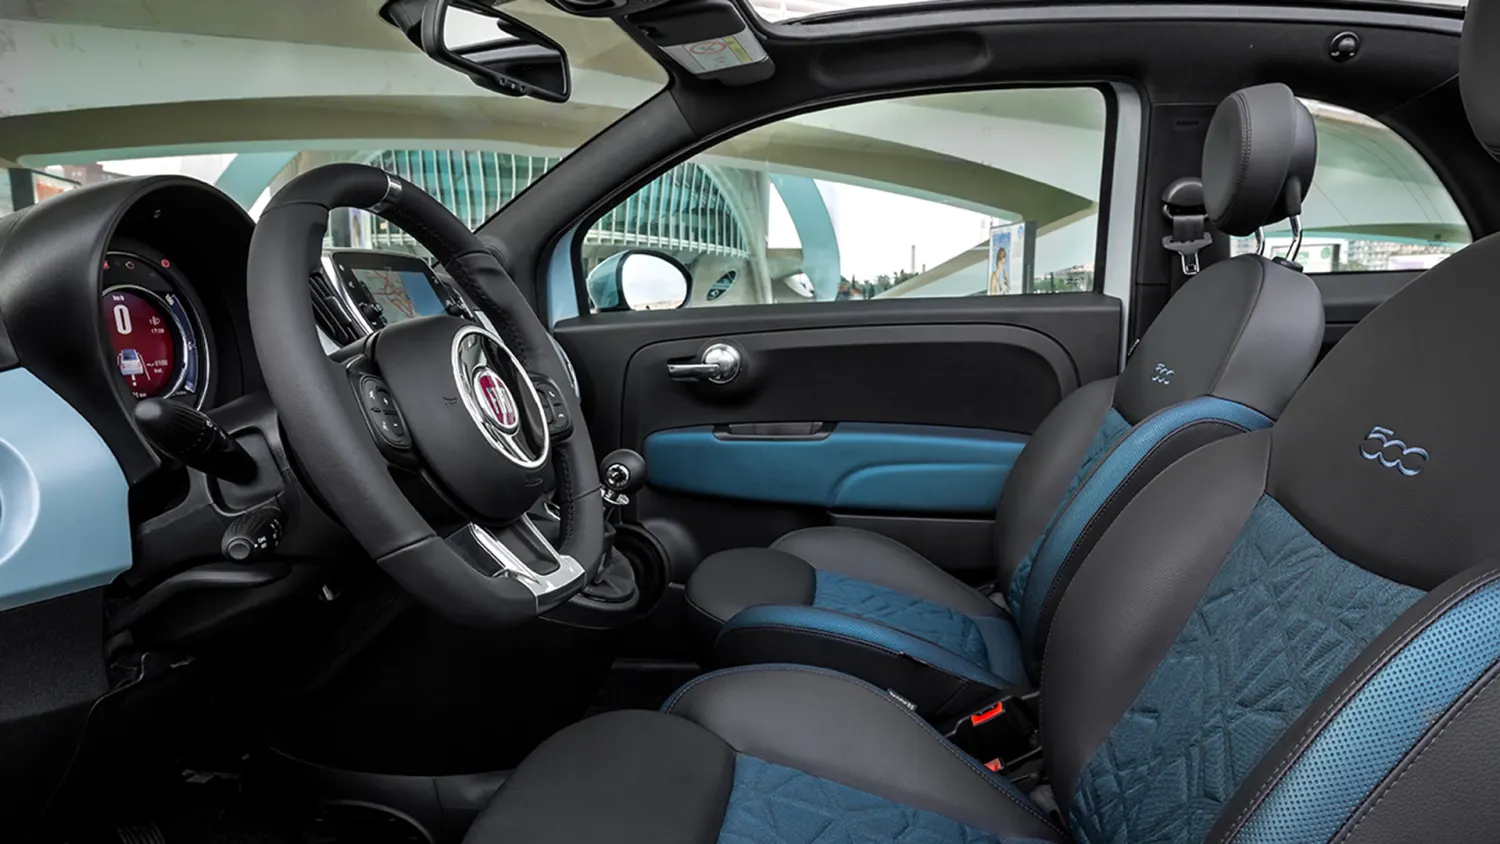 Fiat 500 Hybrid im Test – Daten, Verbrauch, Preis